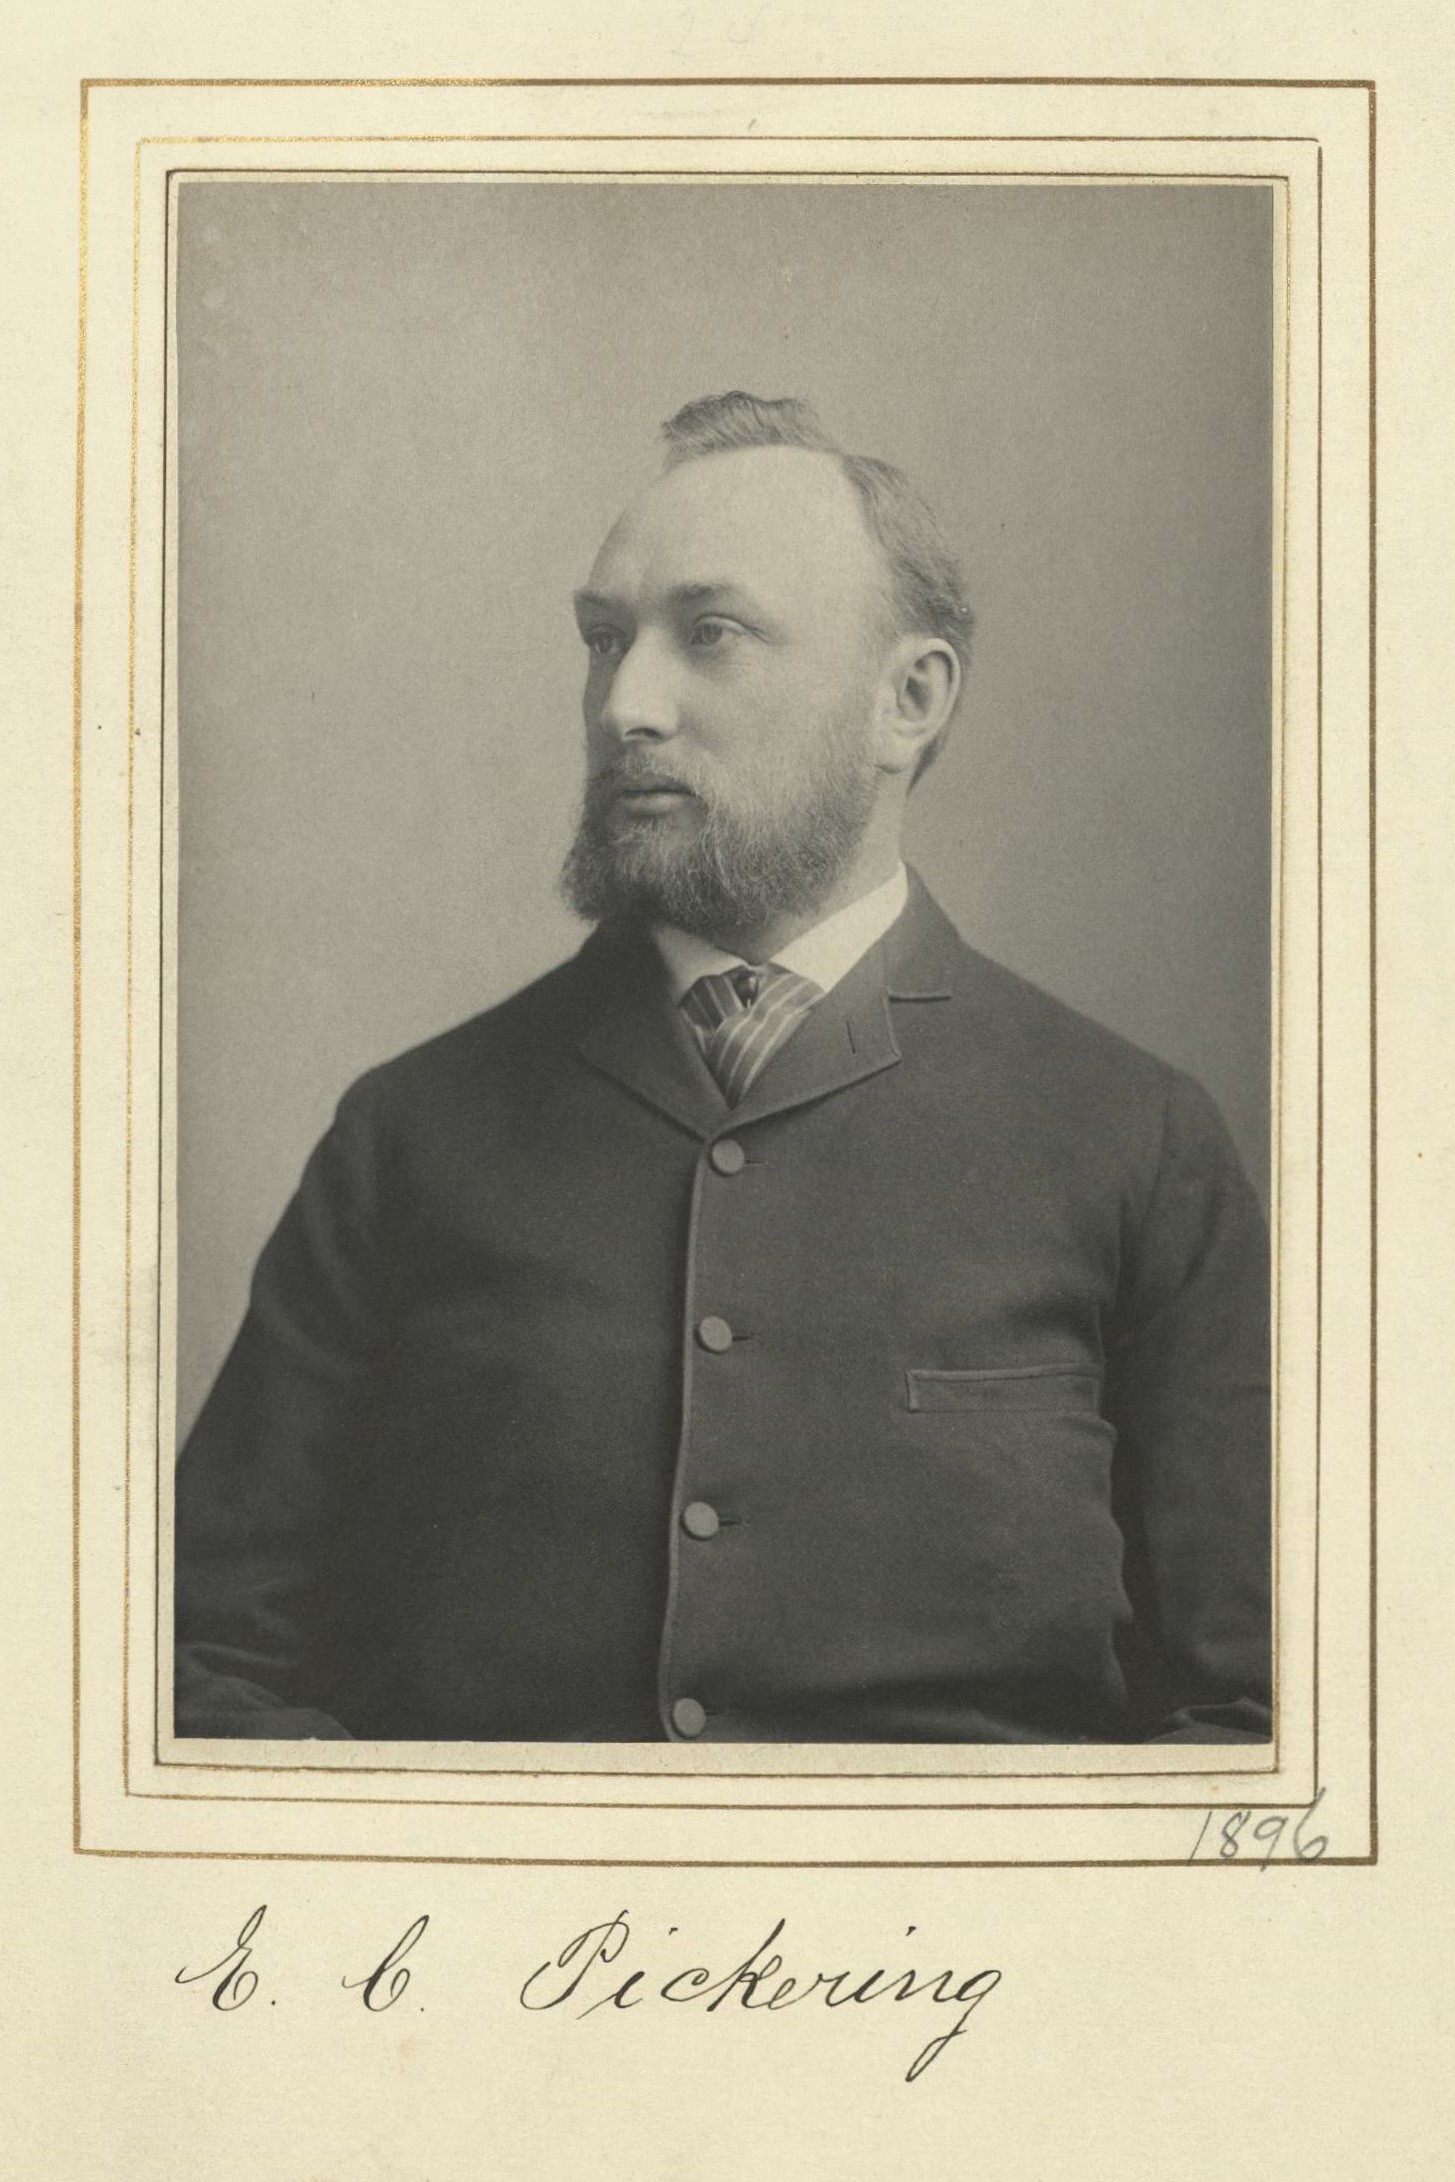 Member portrait of Edward C. Pickering